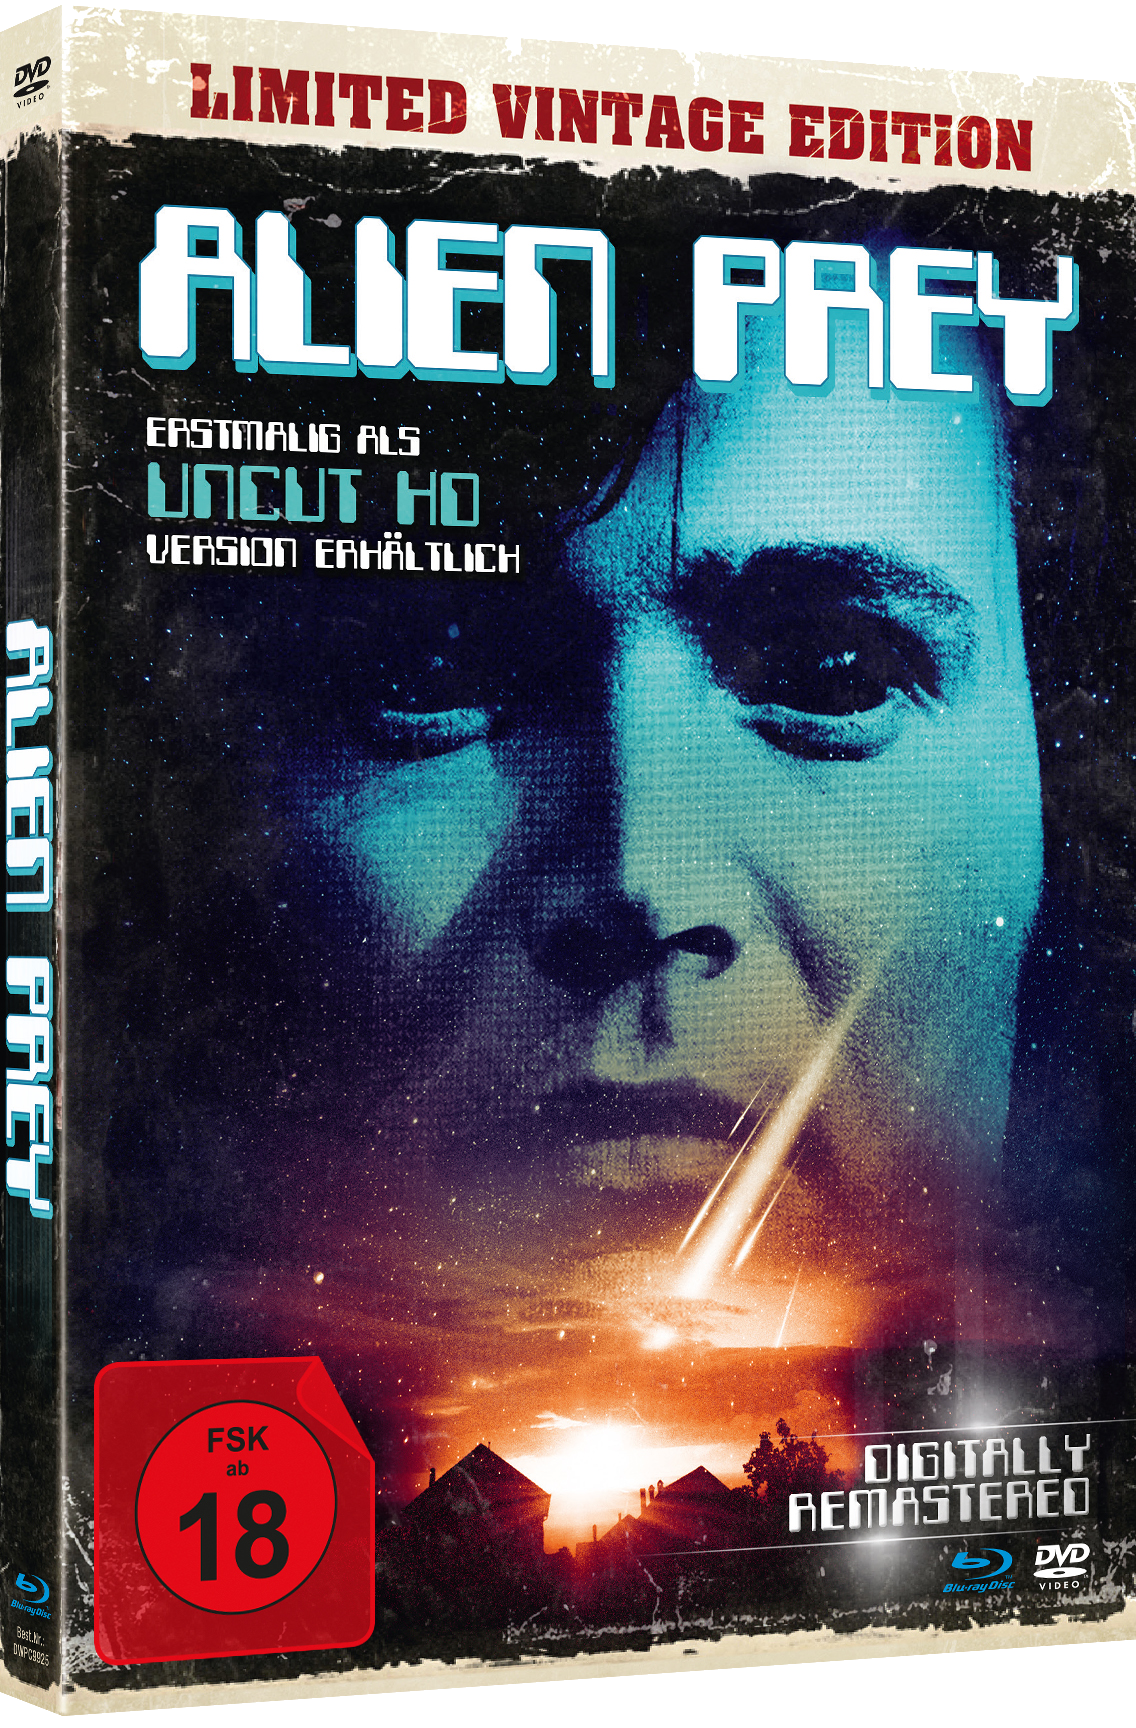 DVD Mediabook) Edition Blu-ray + Prey-Uncut (DVD+BD Alien